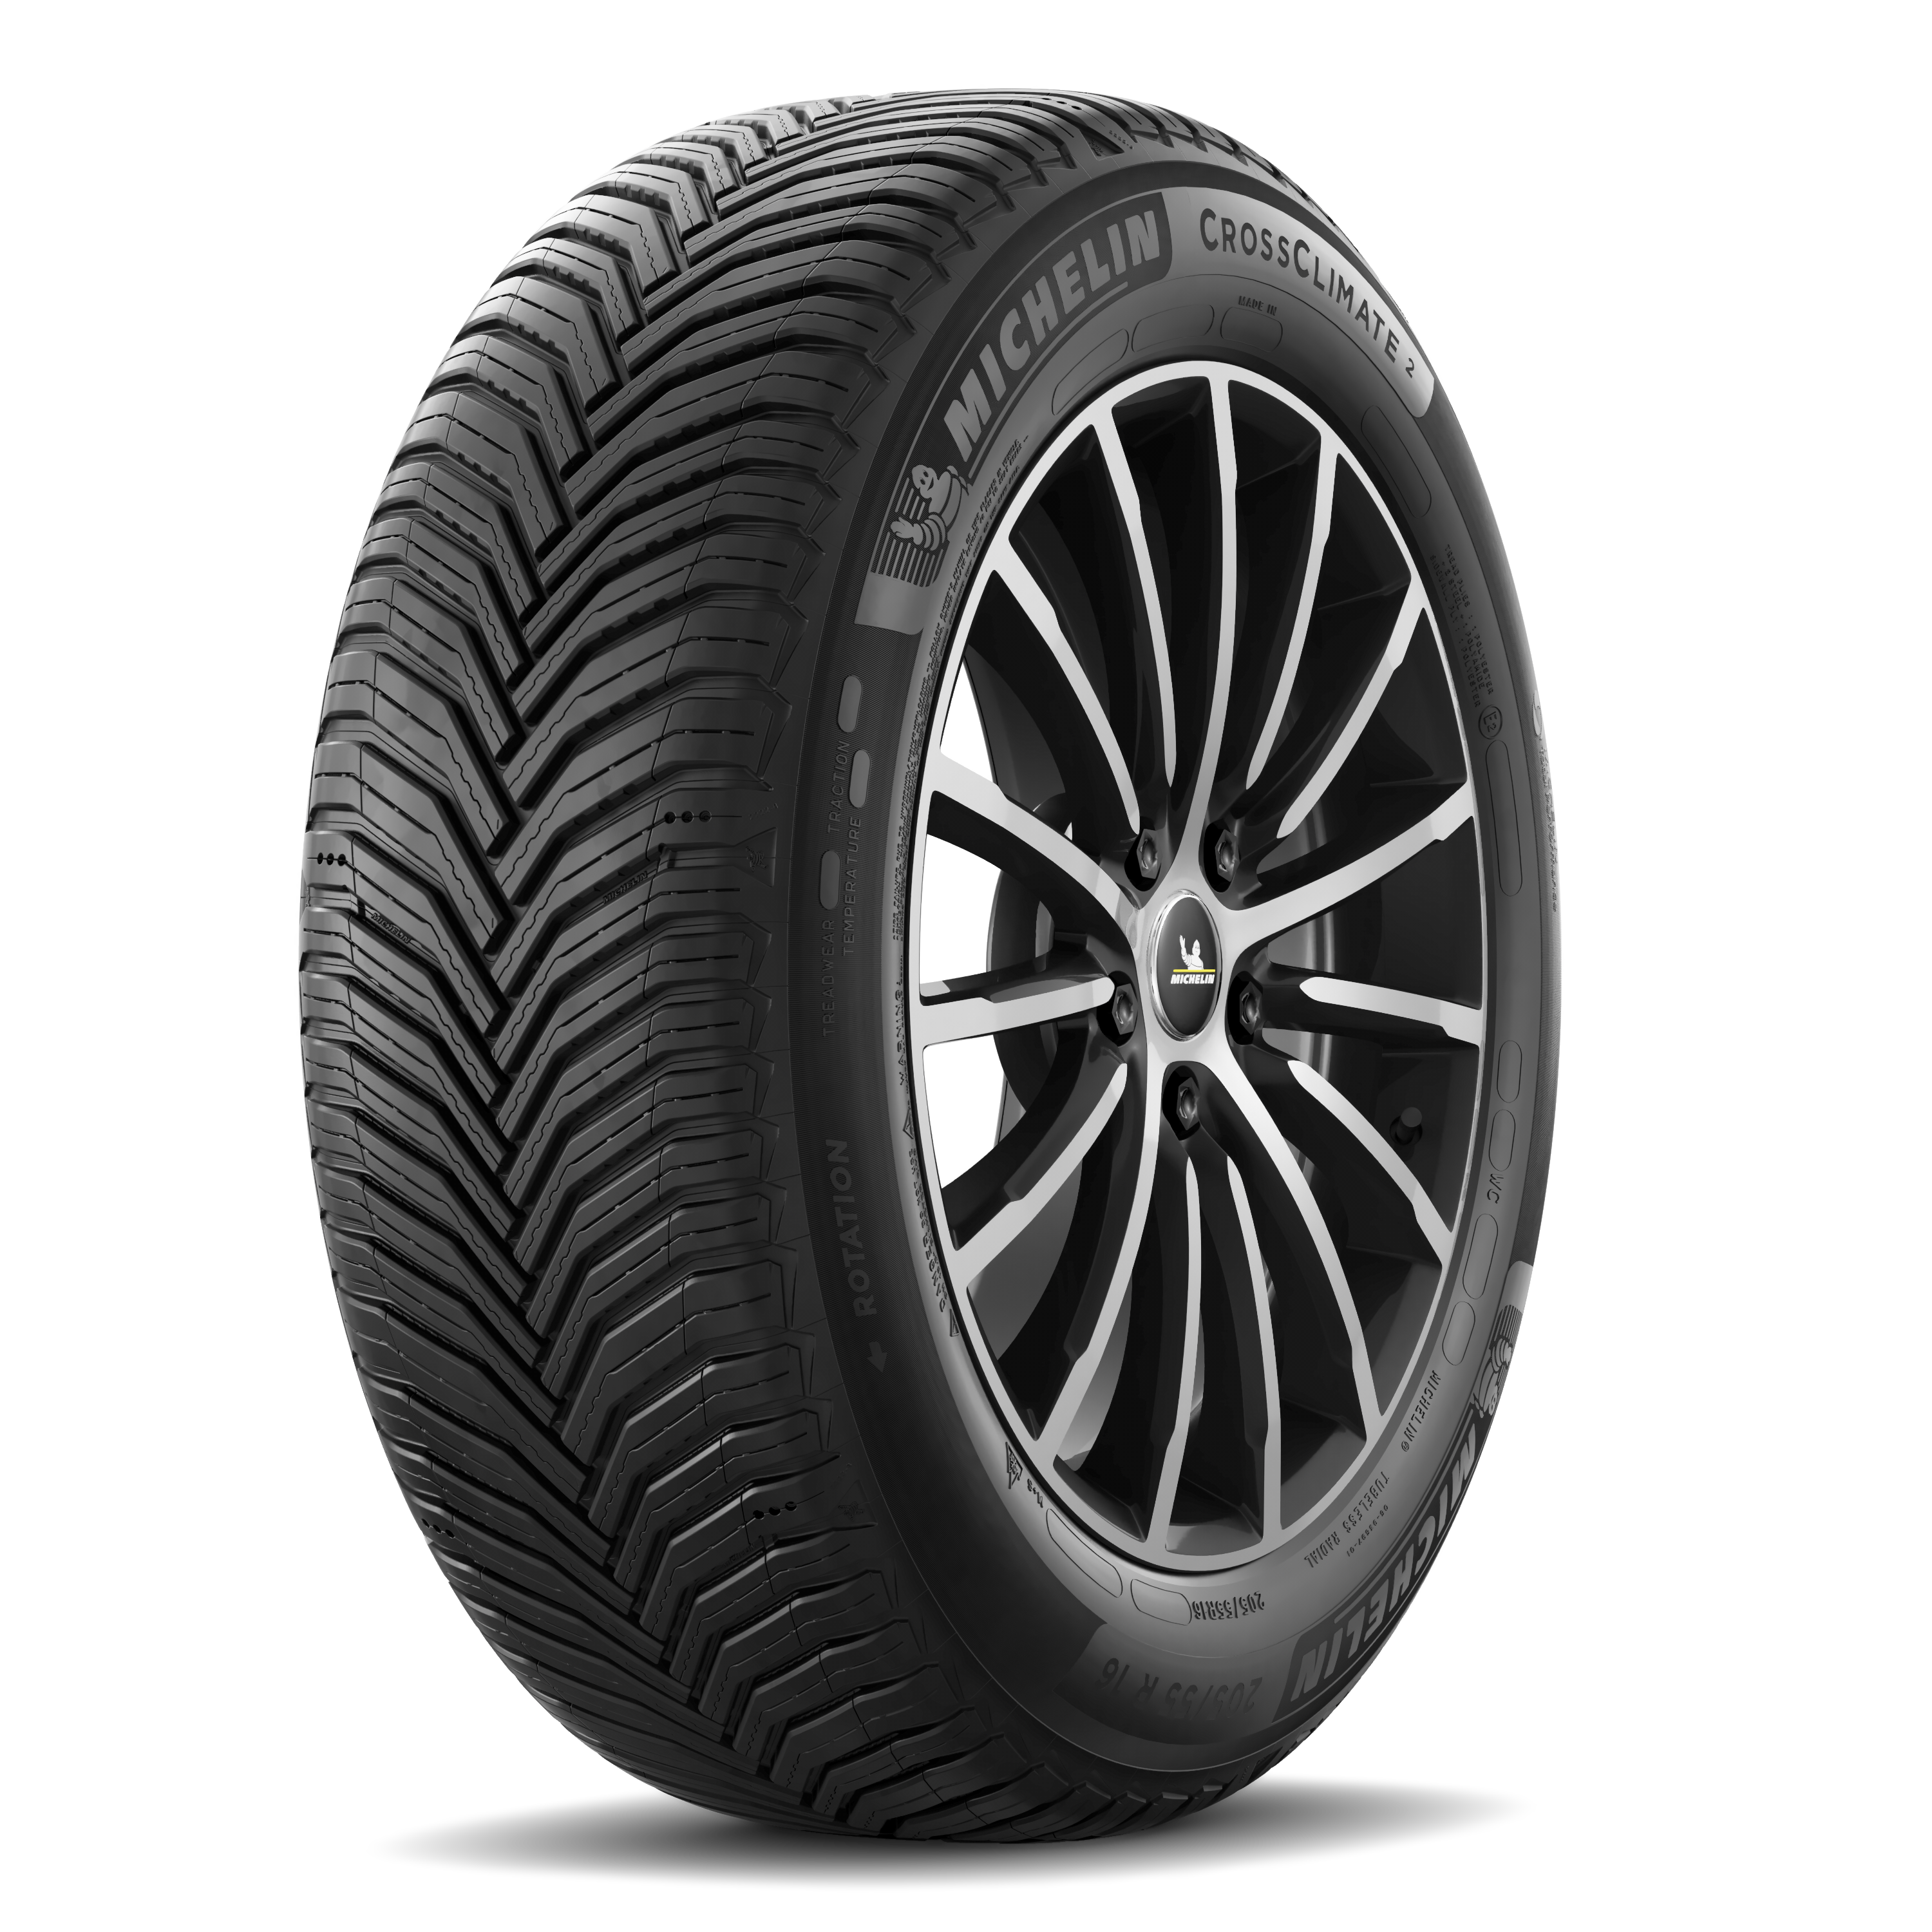 Gomme Nuove Michelin 235/55 R18 104V CROSSCLIMATE 2 XL M+S pneumatici nuovi All Season